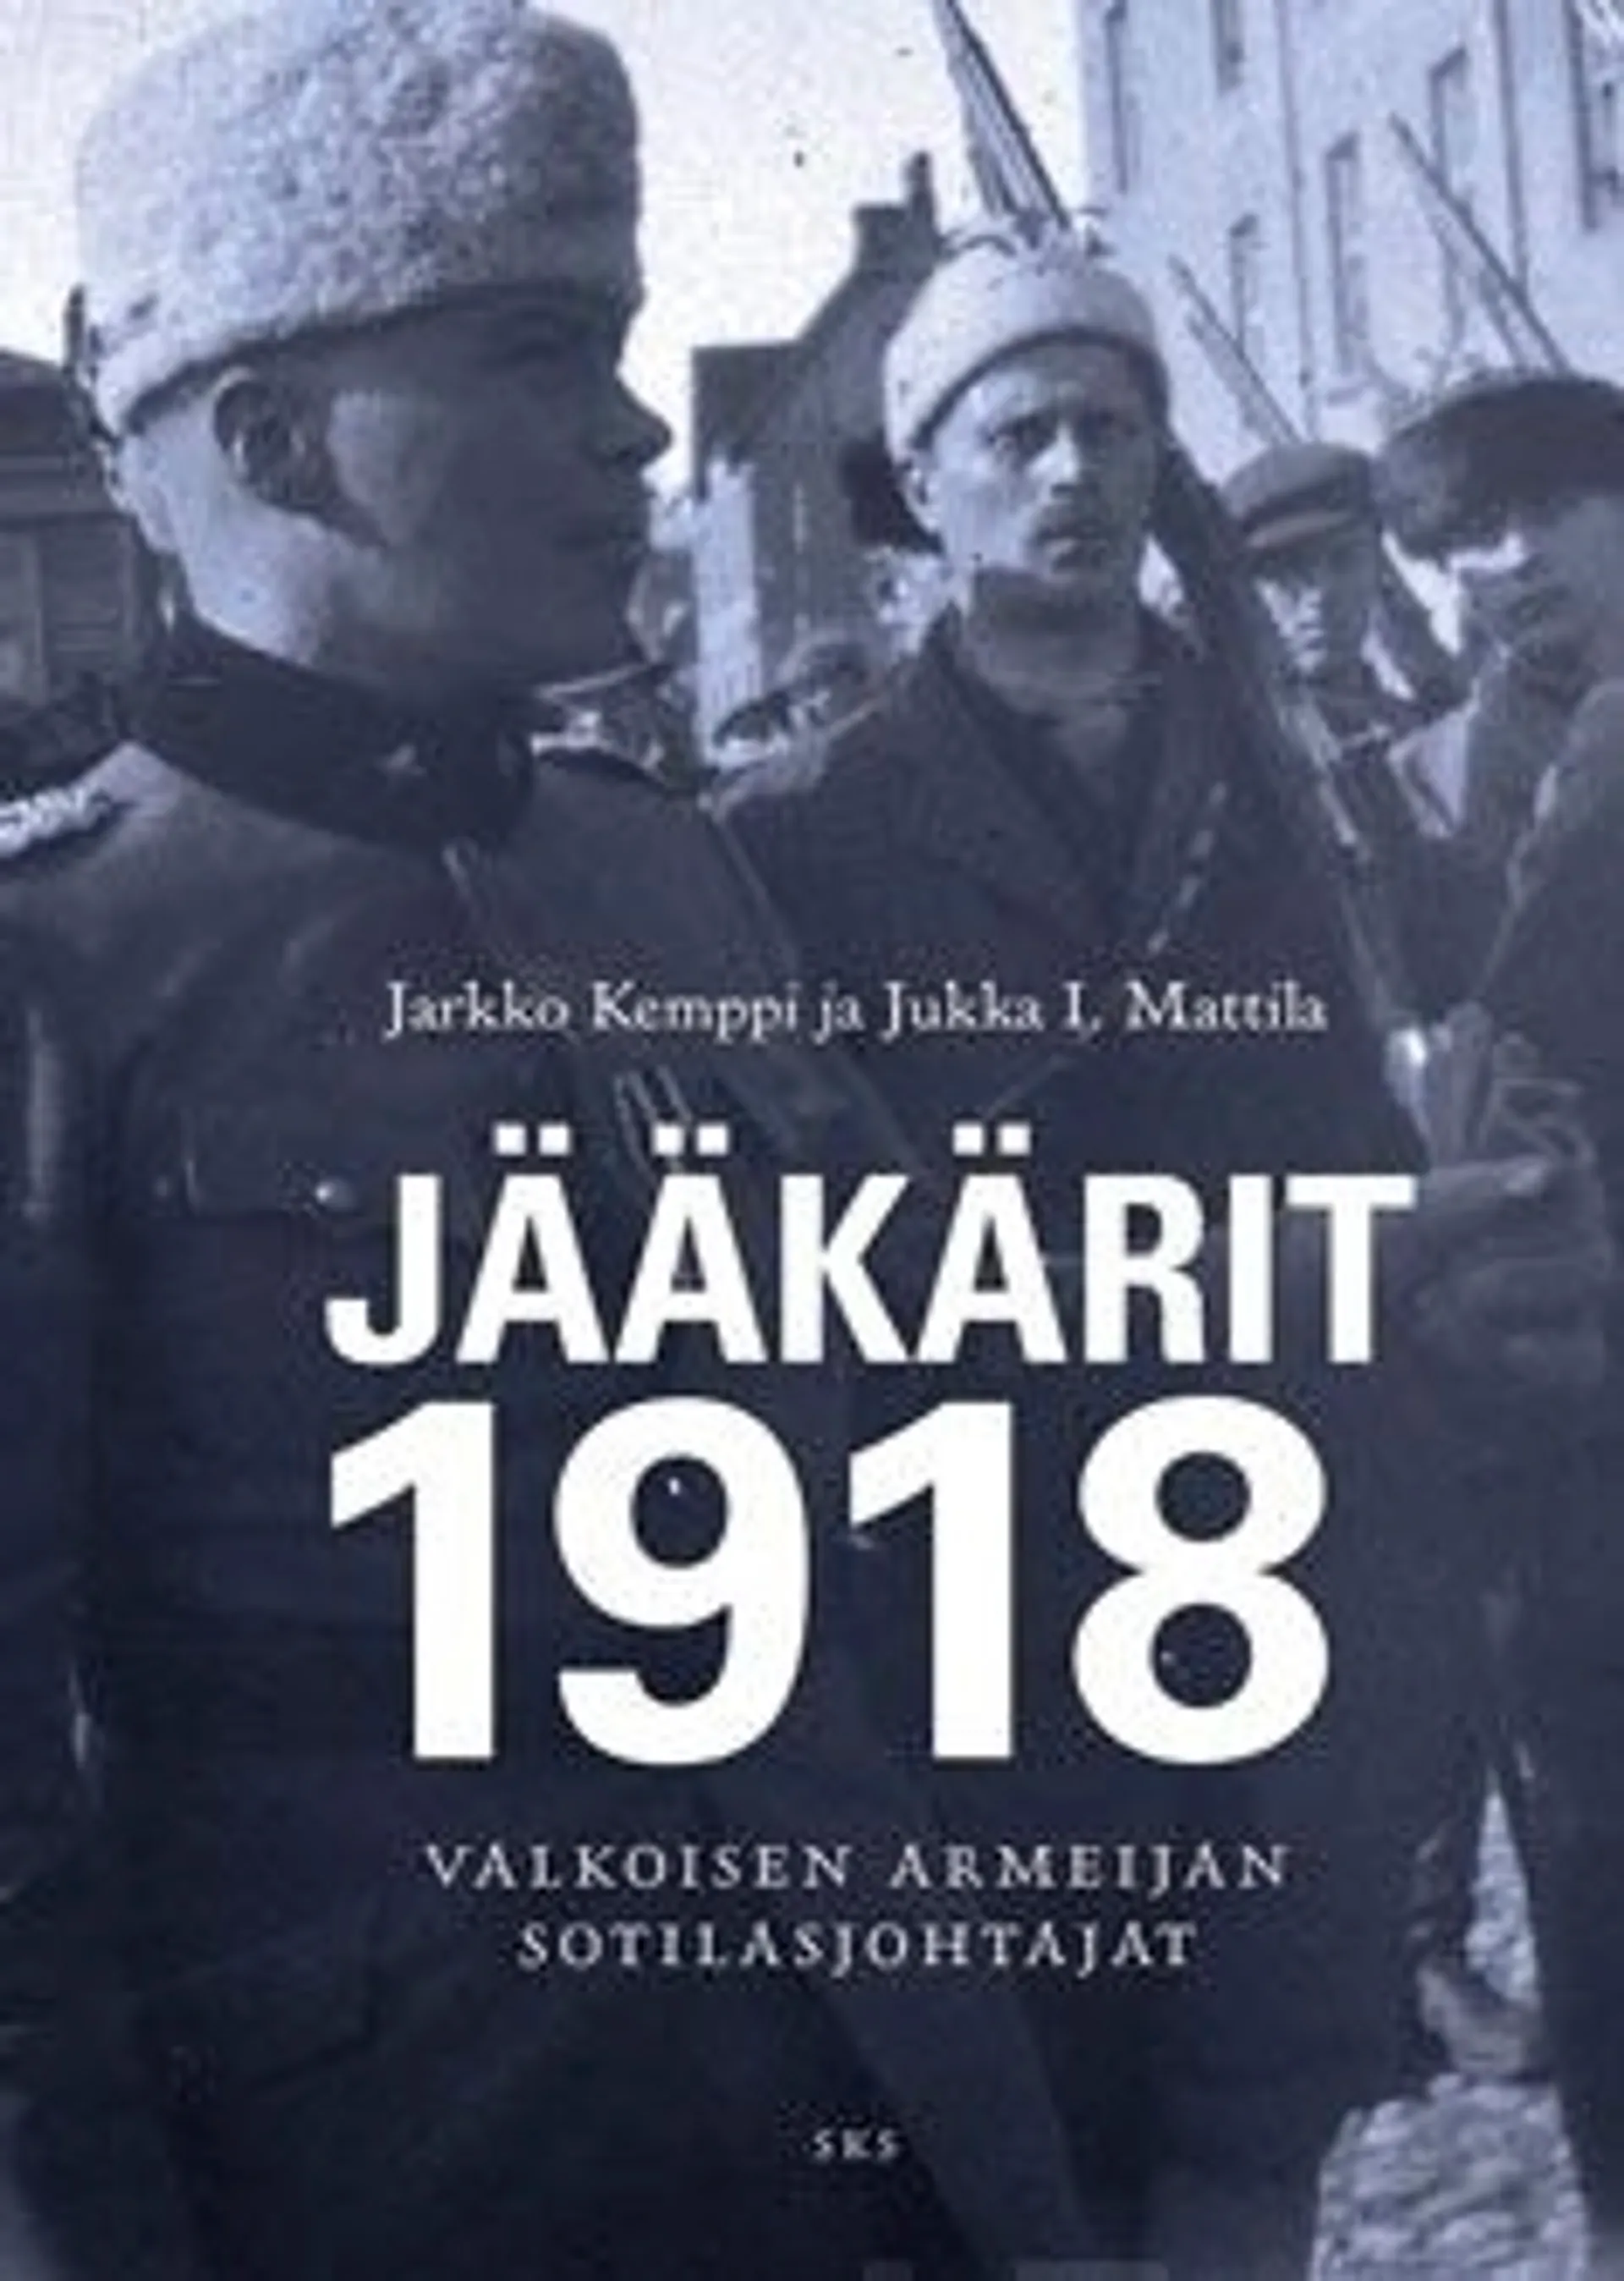 Kemppi, Jääkärit 1918